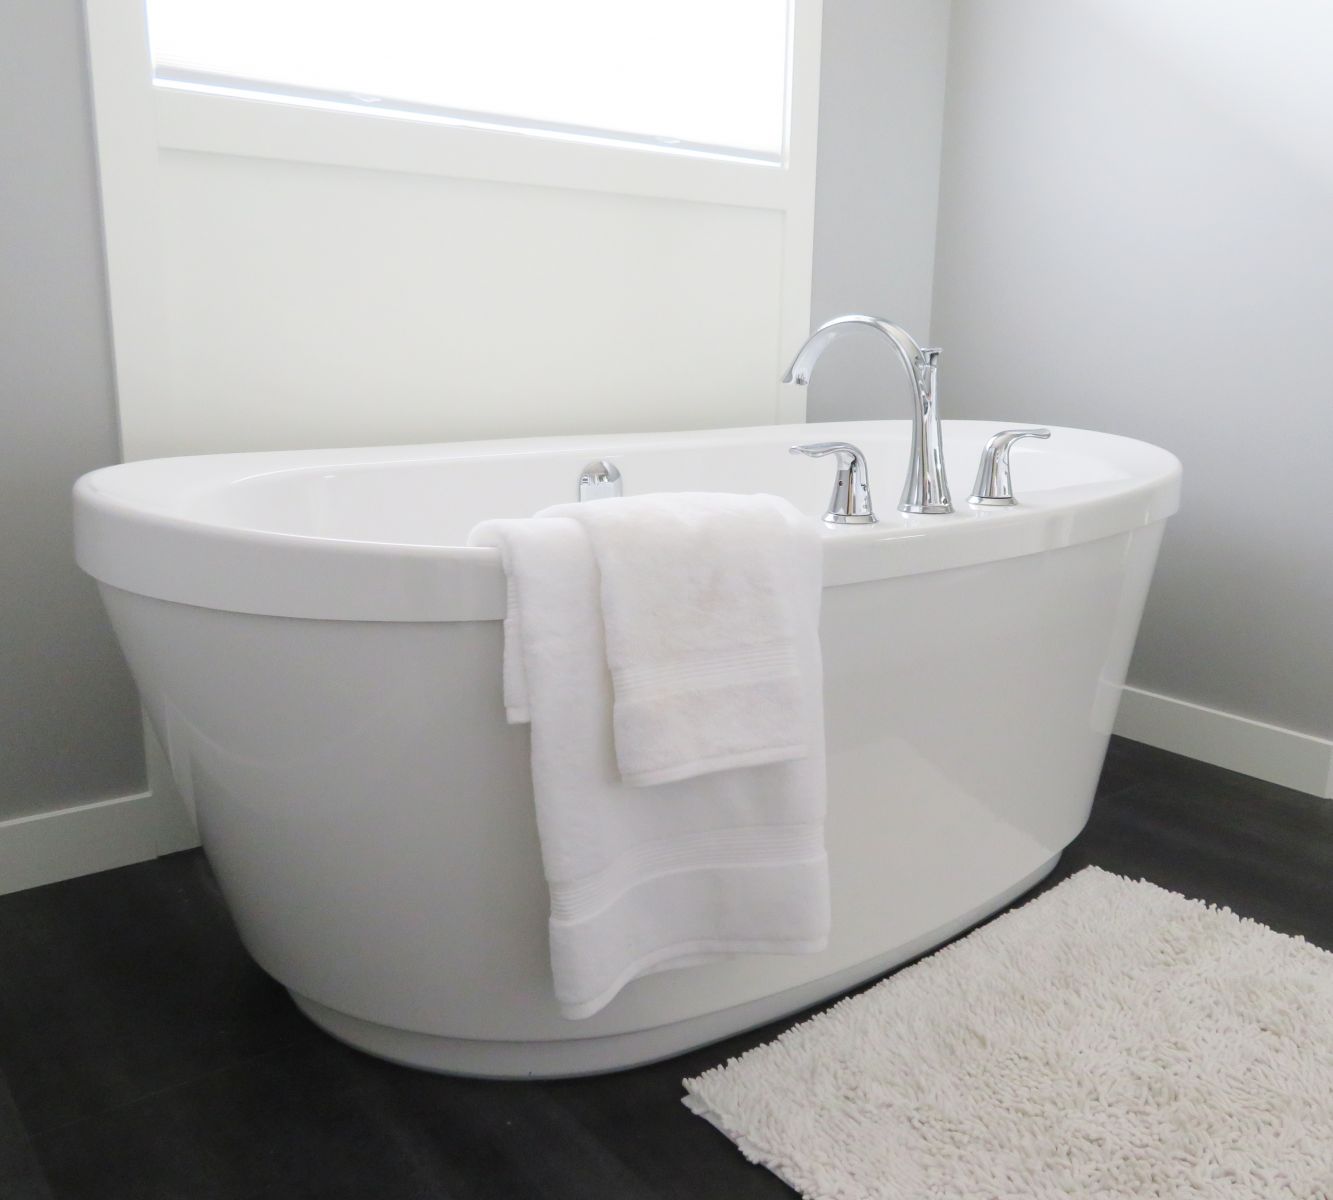 زيادة المساحة المخصصة لللاستحمام تعطي شعورا بالاتساع والنظافة والراحة